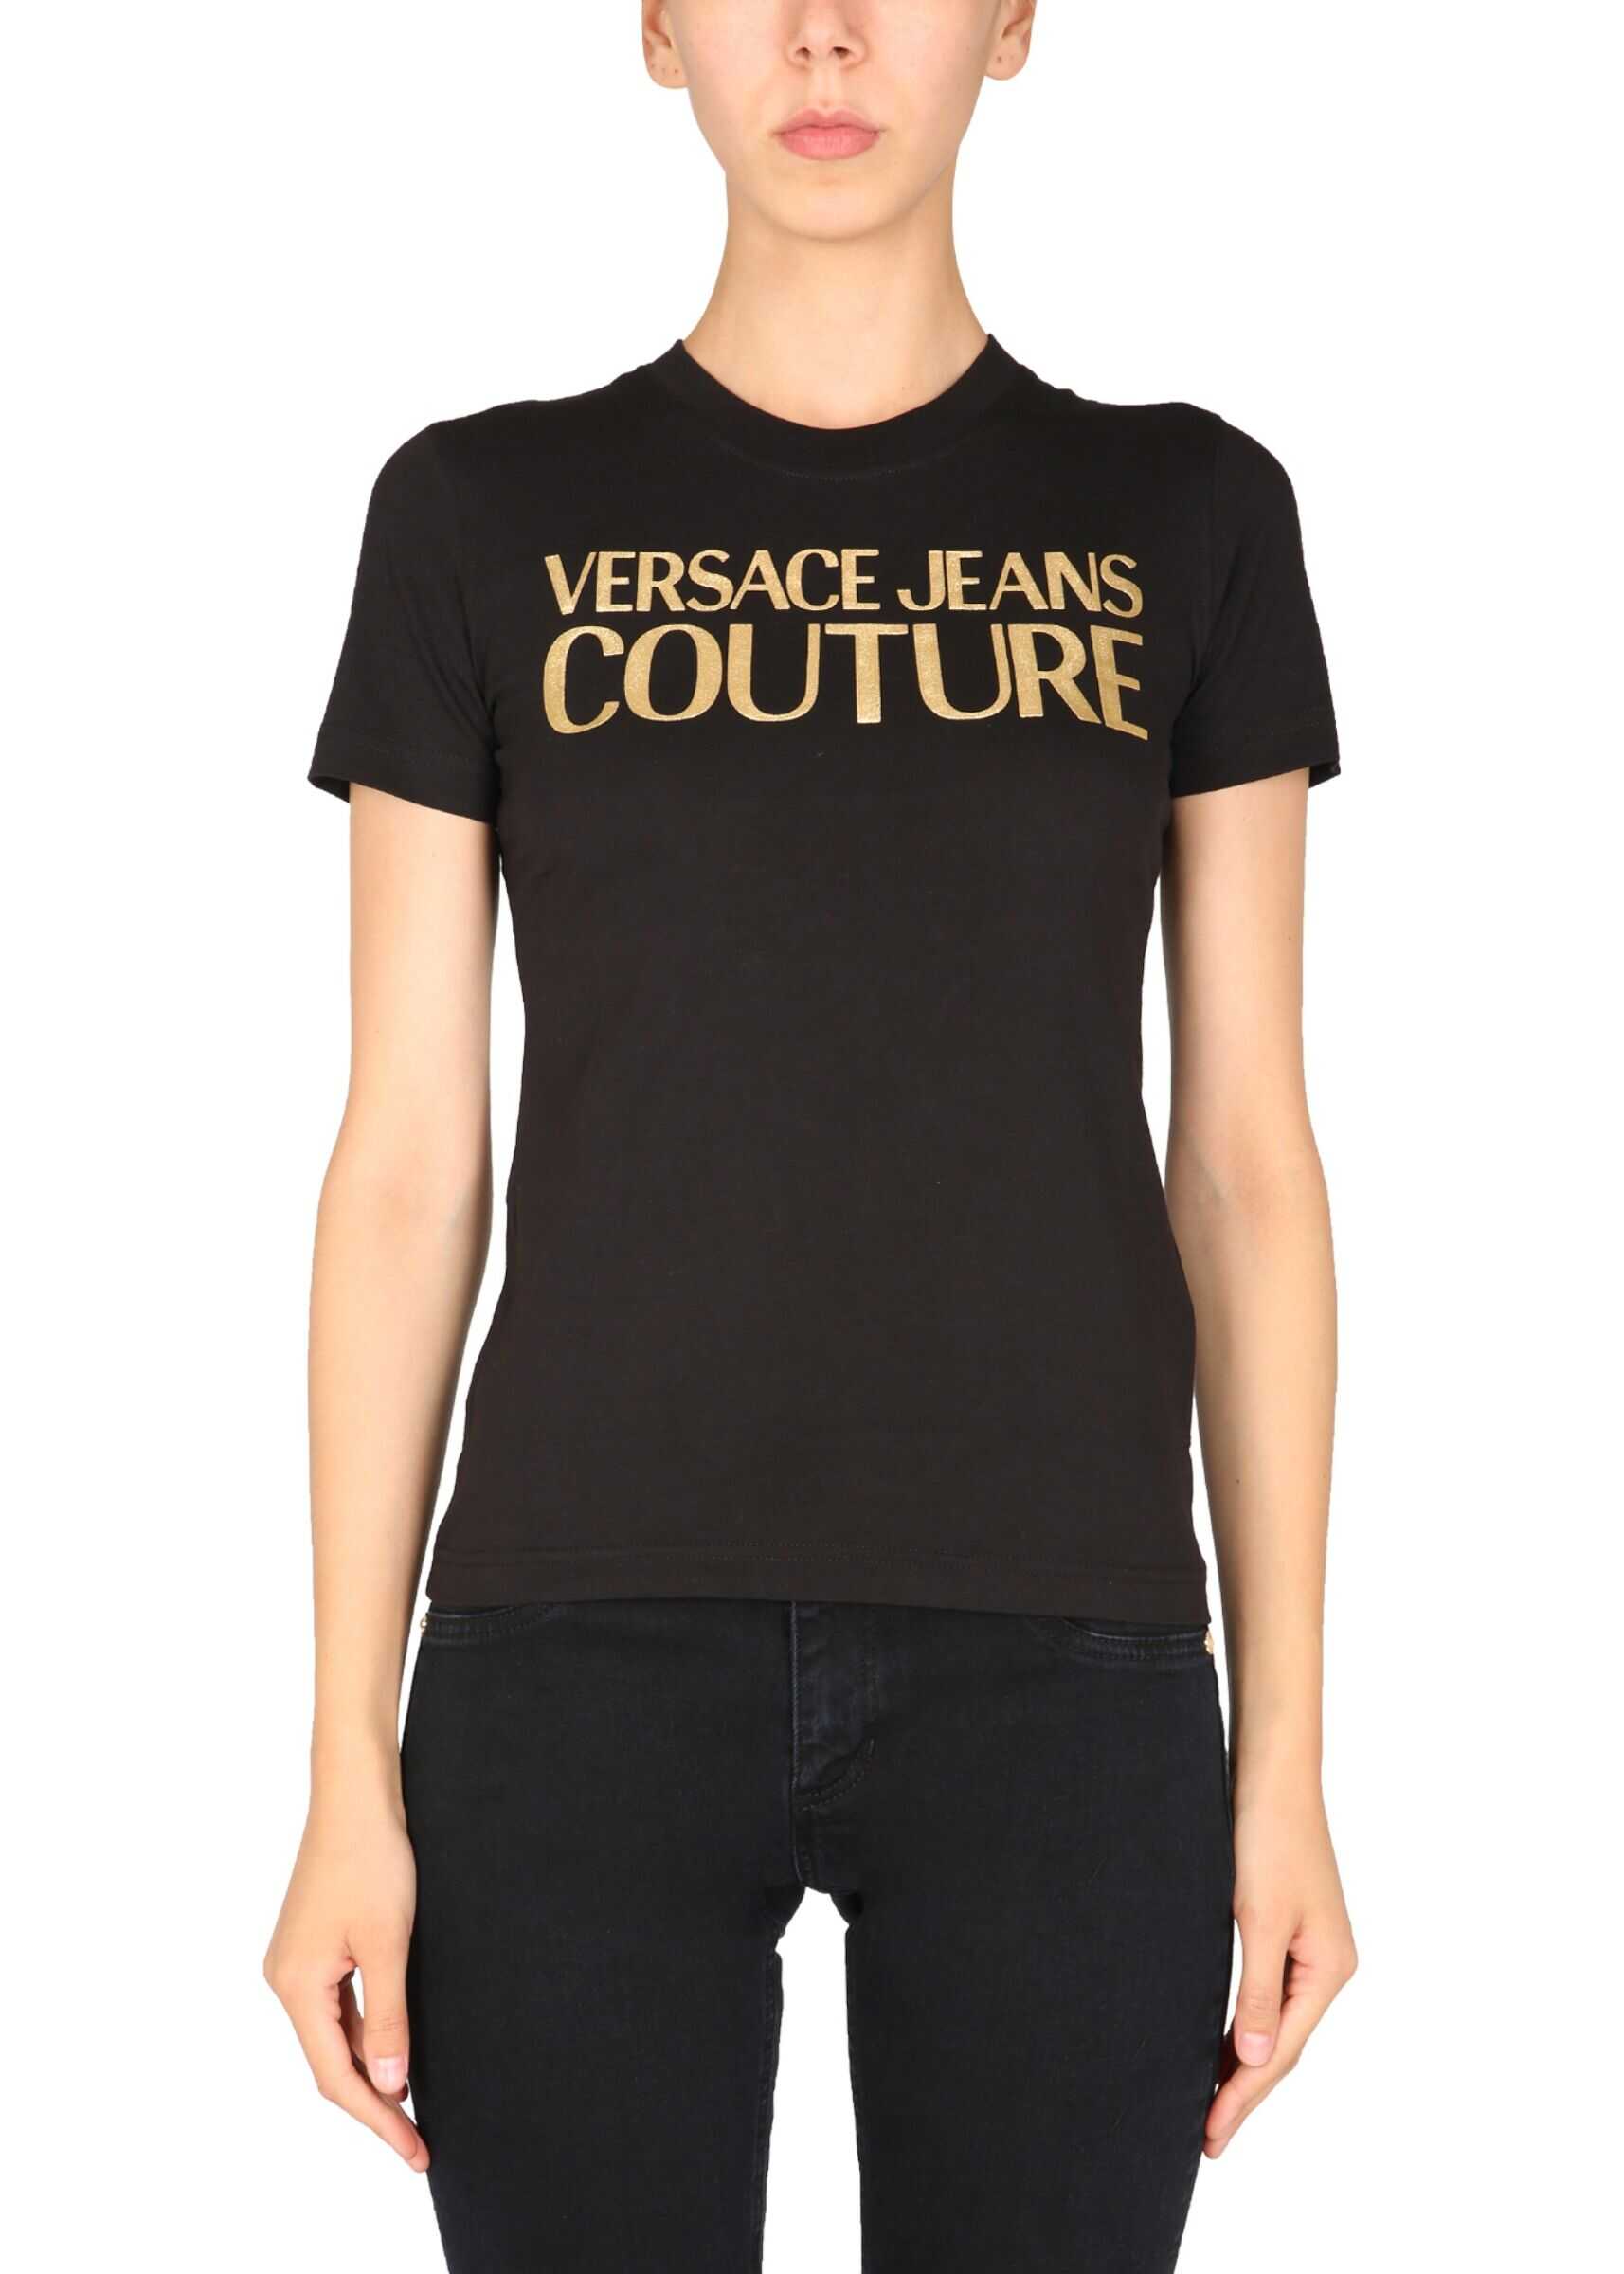 Versace Jeans Couture Crew Neck T-Shirt 71HAHT04_CJ00TG89 BLACK